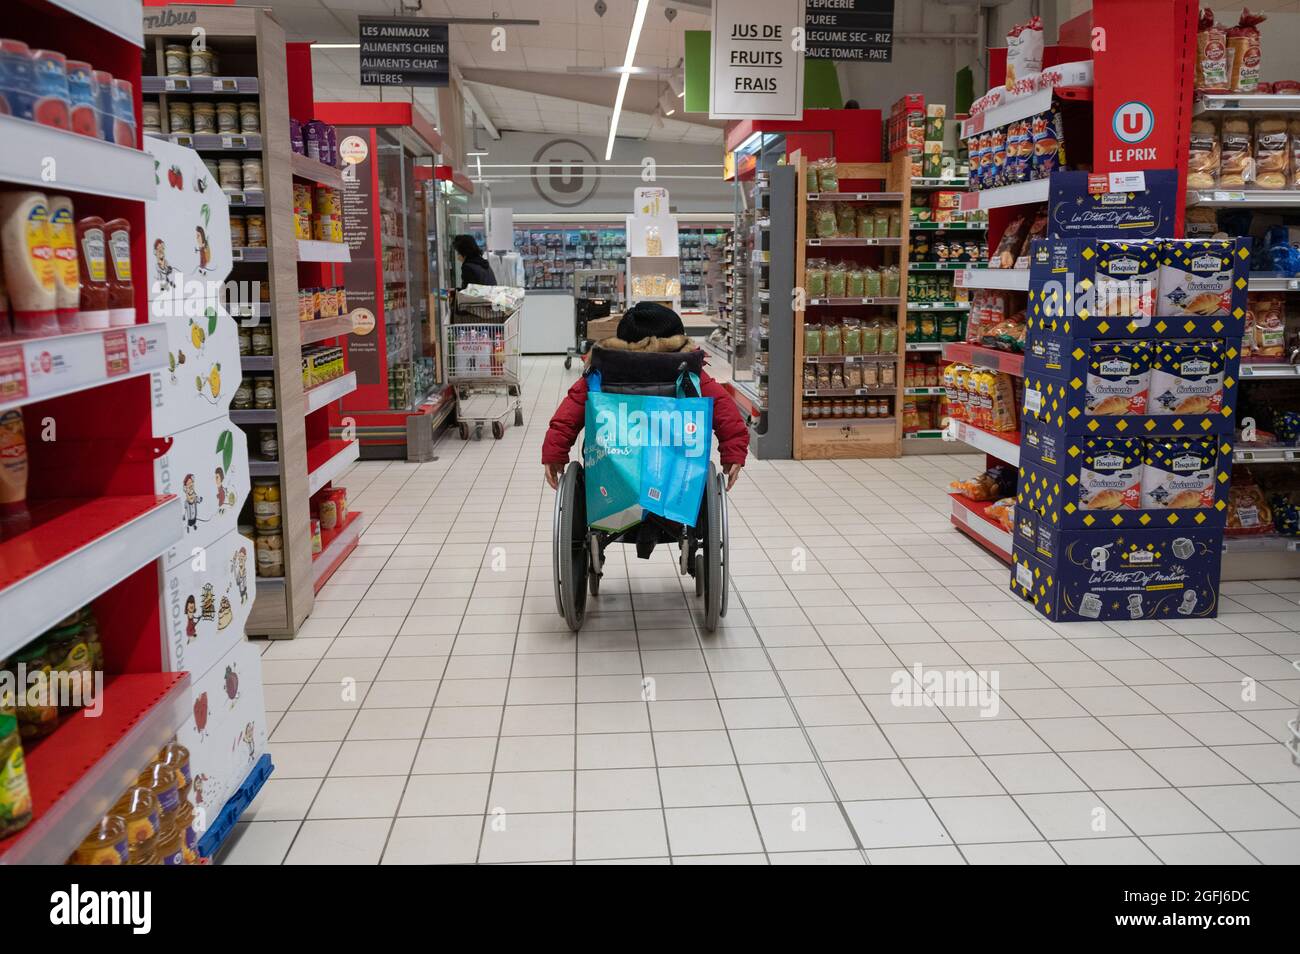 Supermarché Super U : personne handicapée en fauteuil roulant dans une section du supermarché Banque D'Images